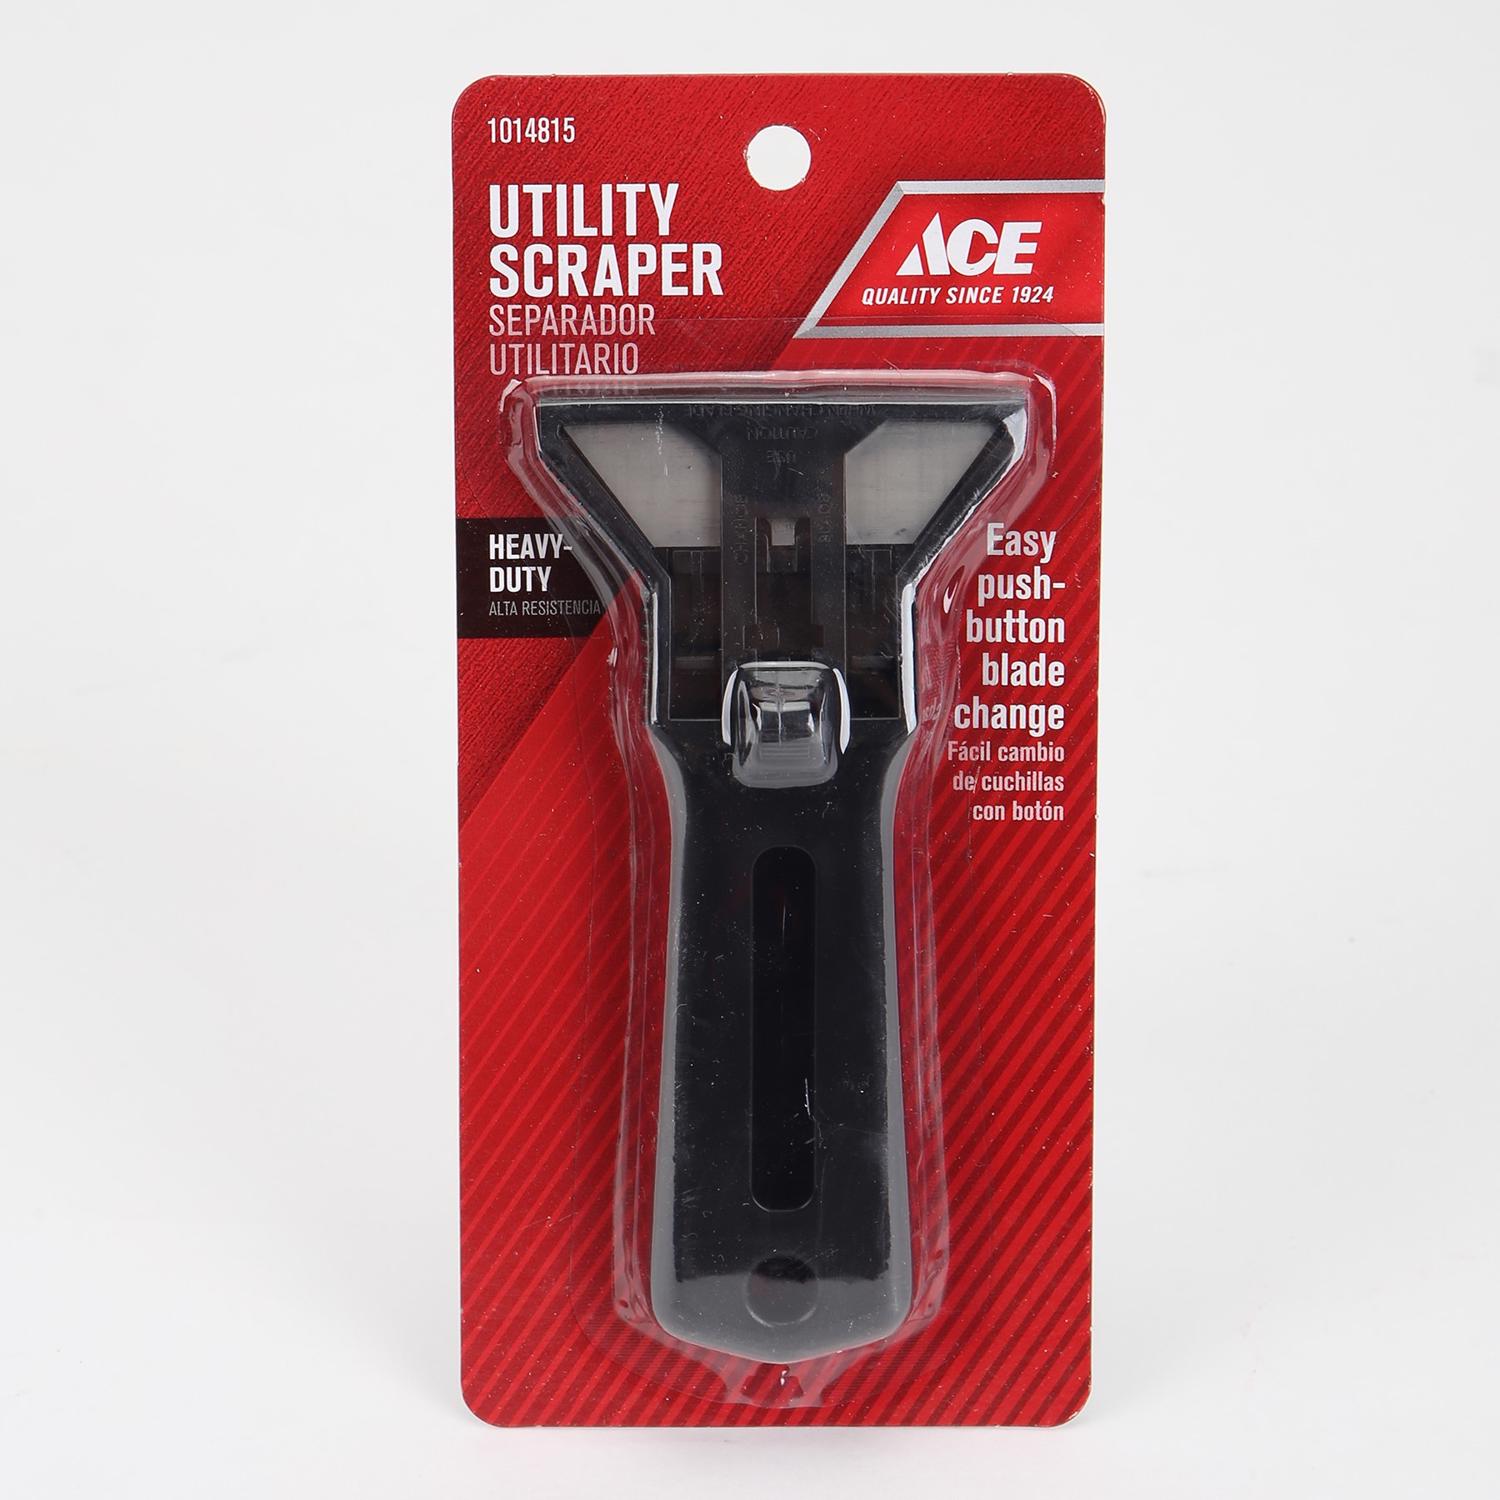 Ace 0.19 in. W Plastic Double Edge Scraper - Ace Hardware